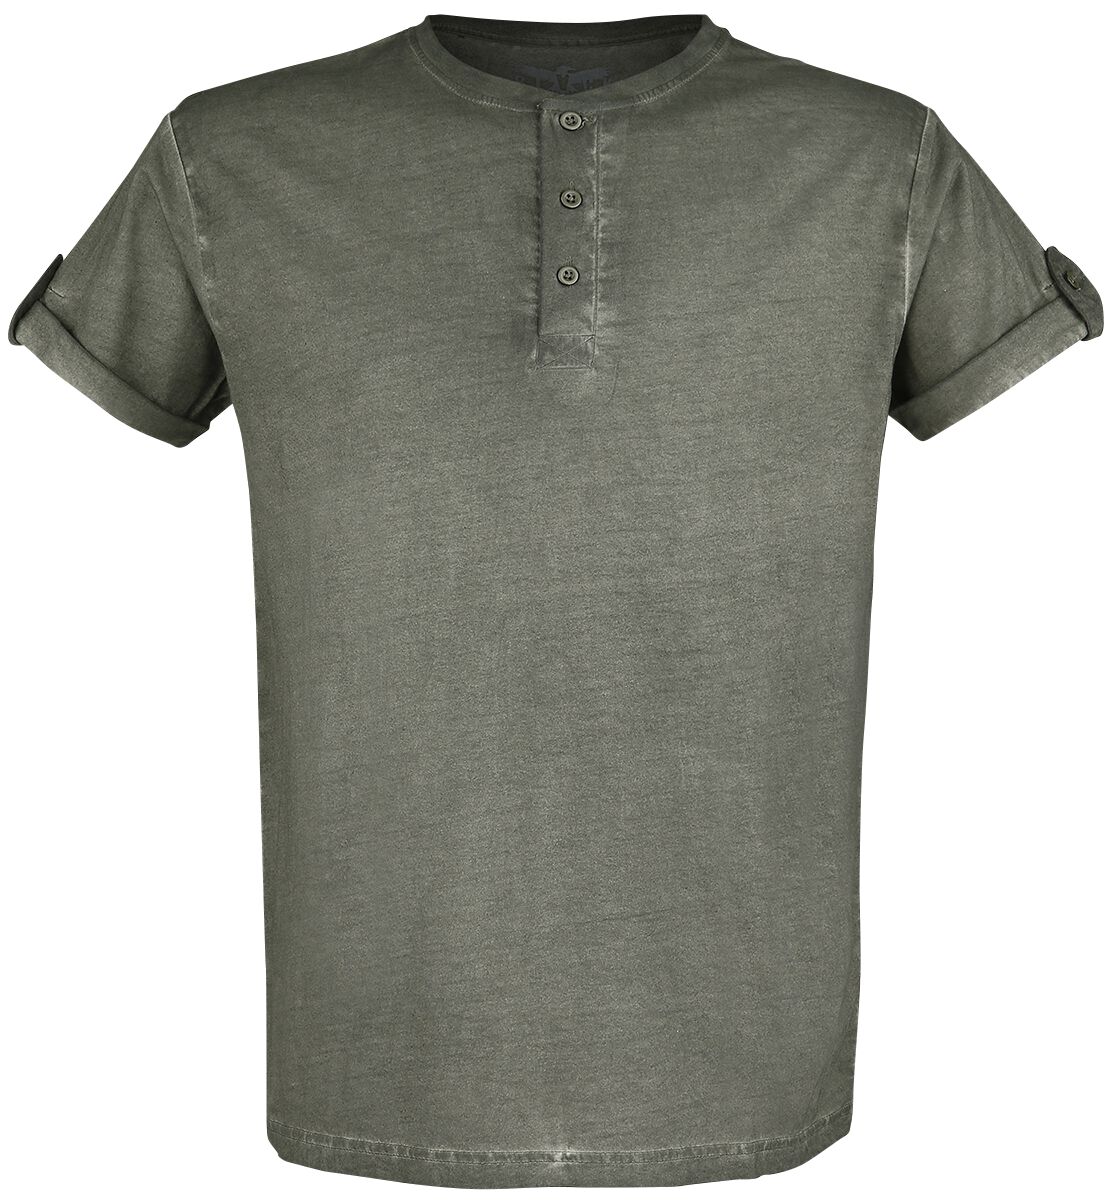 Black Premium by EMP grünes T-Shirt mit Knopfleiste und umgeschlagenen Ärmeln T-Shirt grün in 4XL